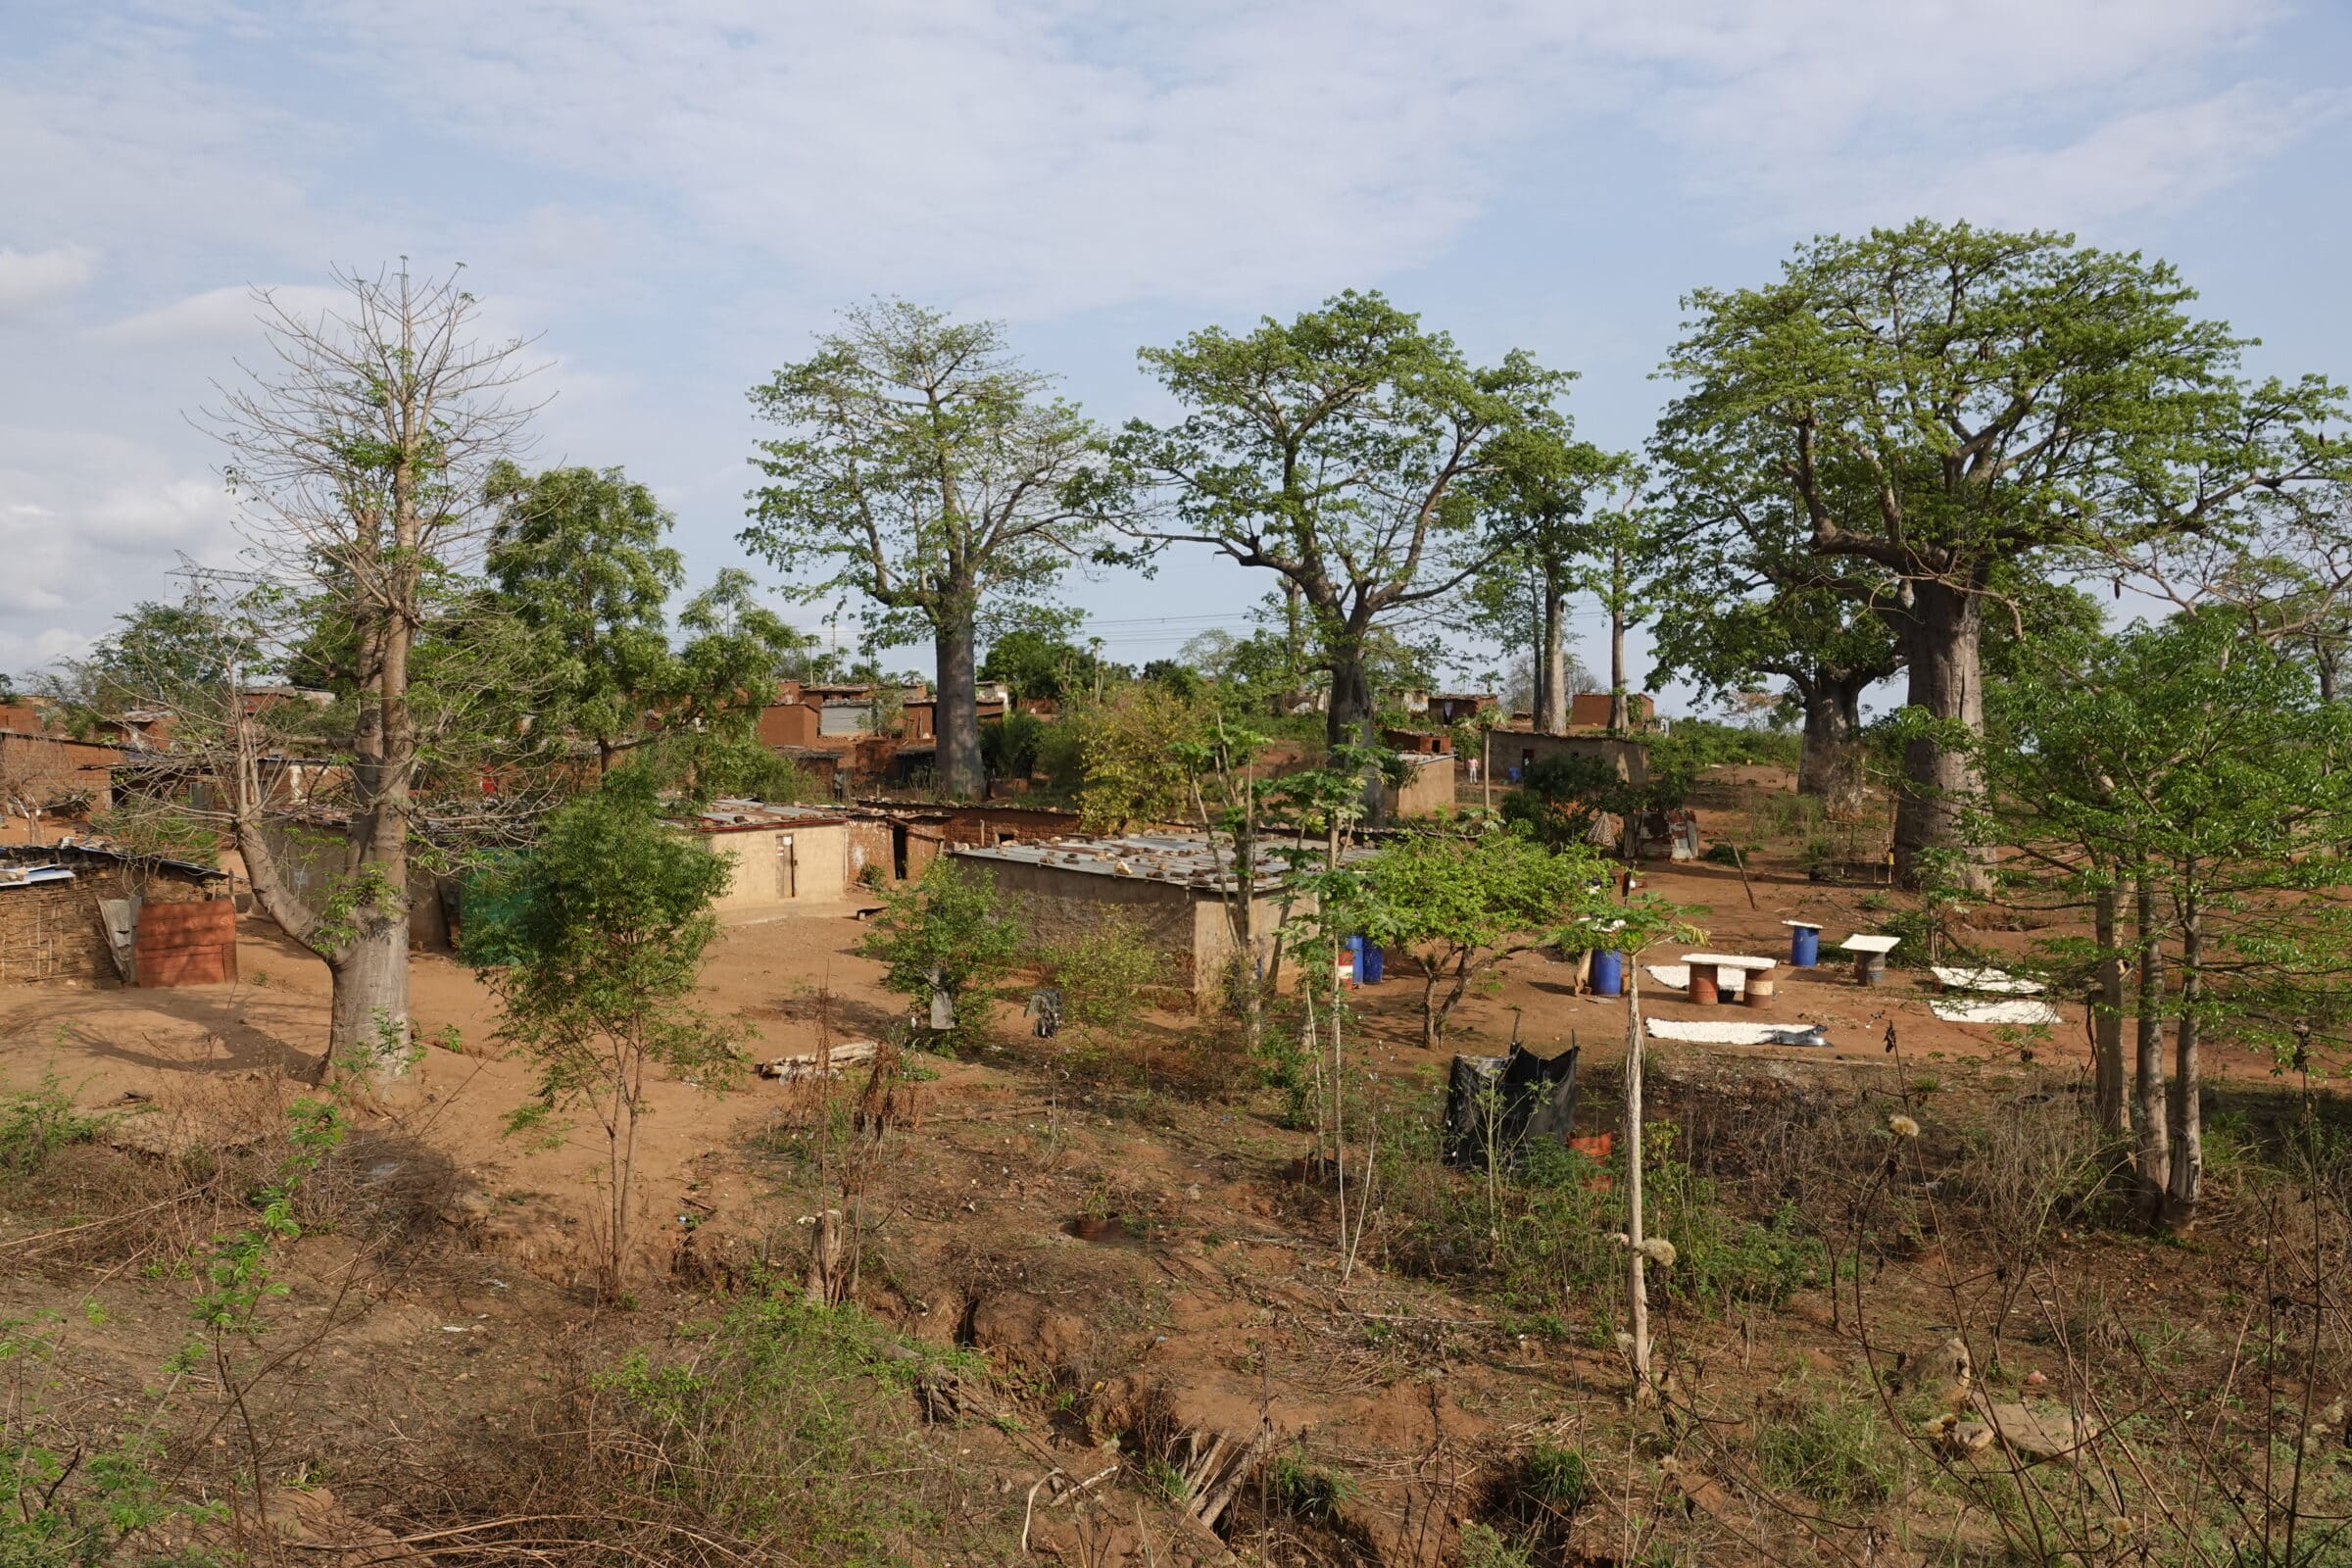 Villaggio con baobab | Overlanding in Angola